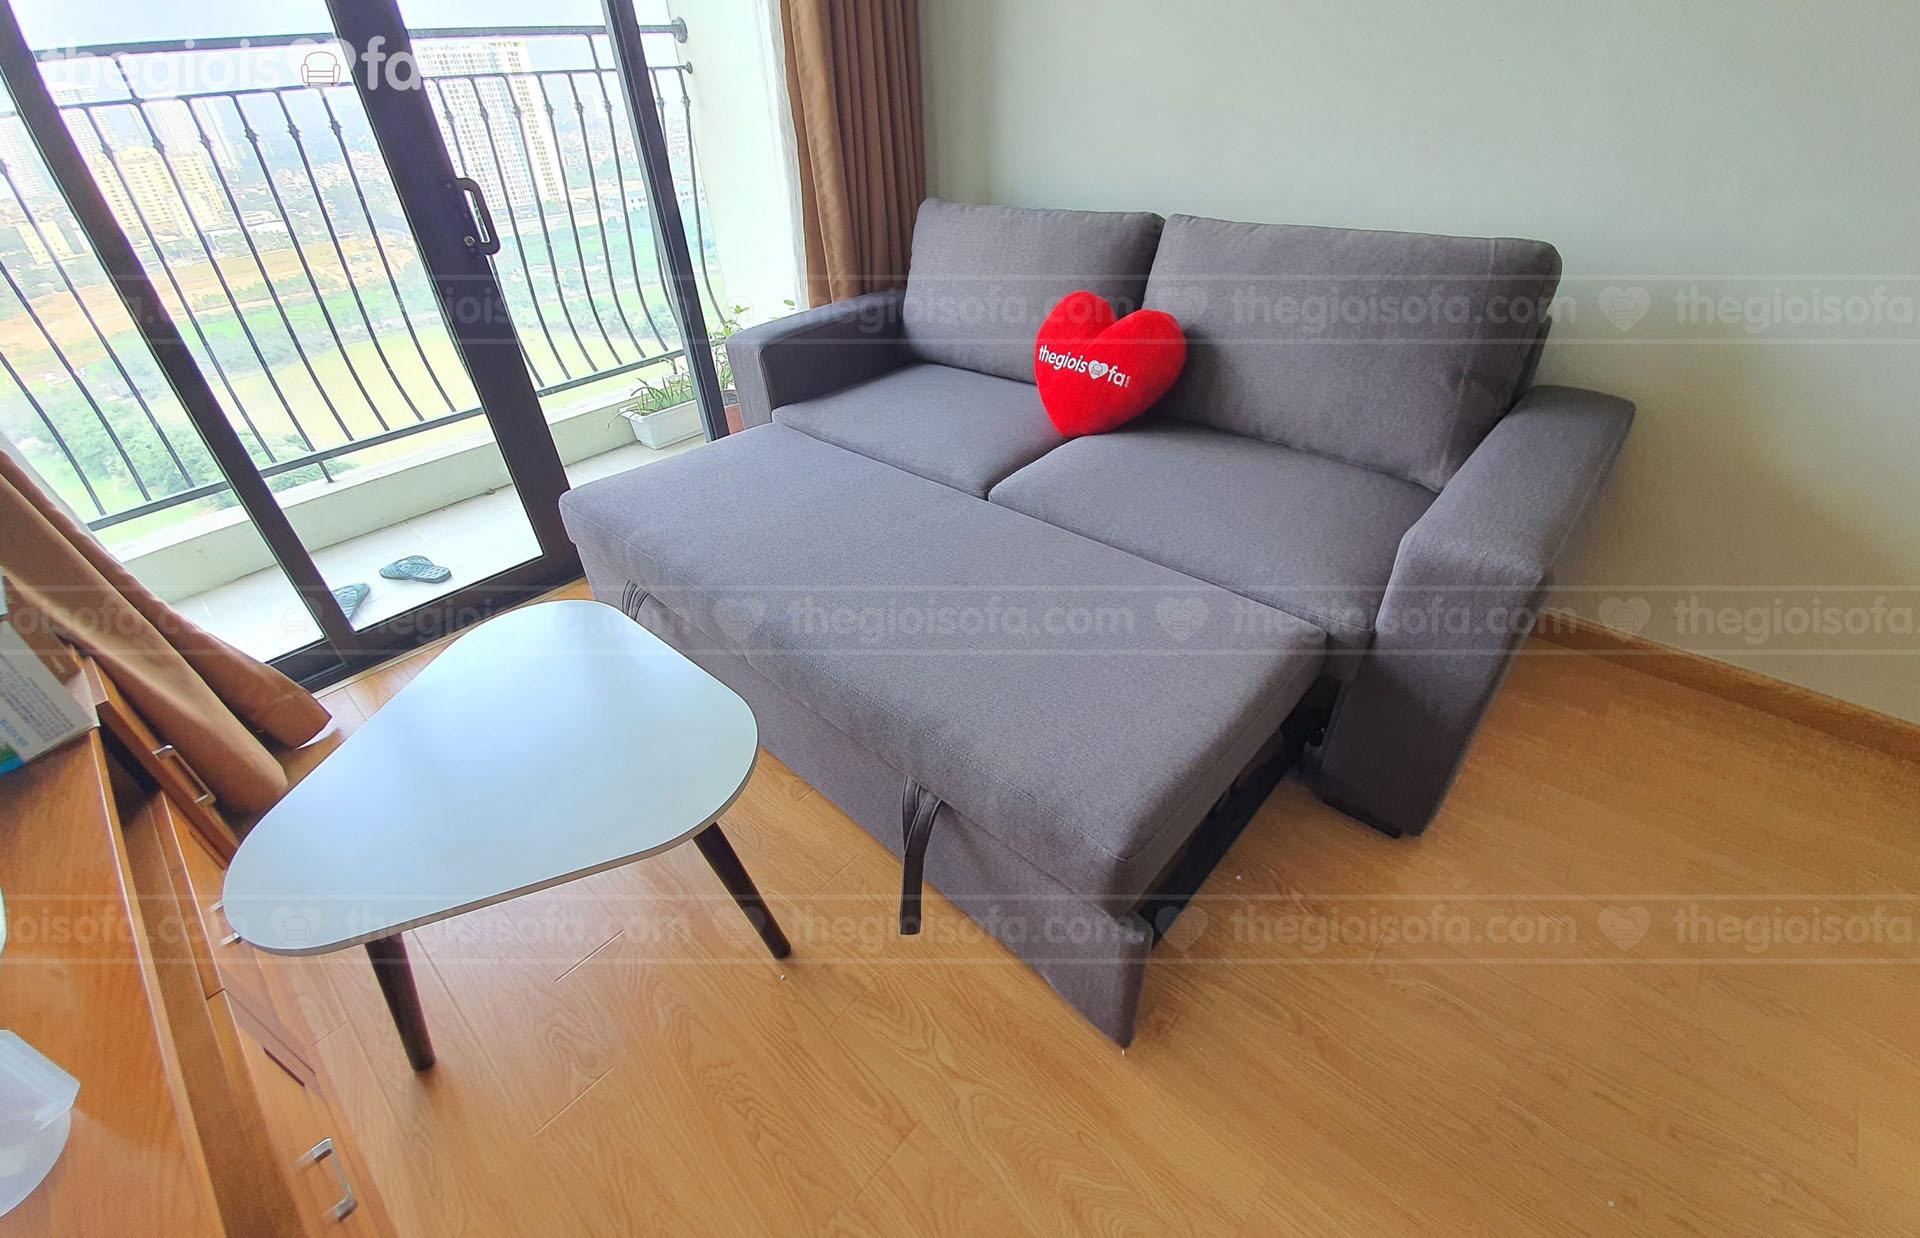 Sofa giường hiện đại là sự lựa chọn hoàn hảo cho ngôi nhà nhỏ